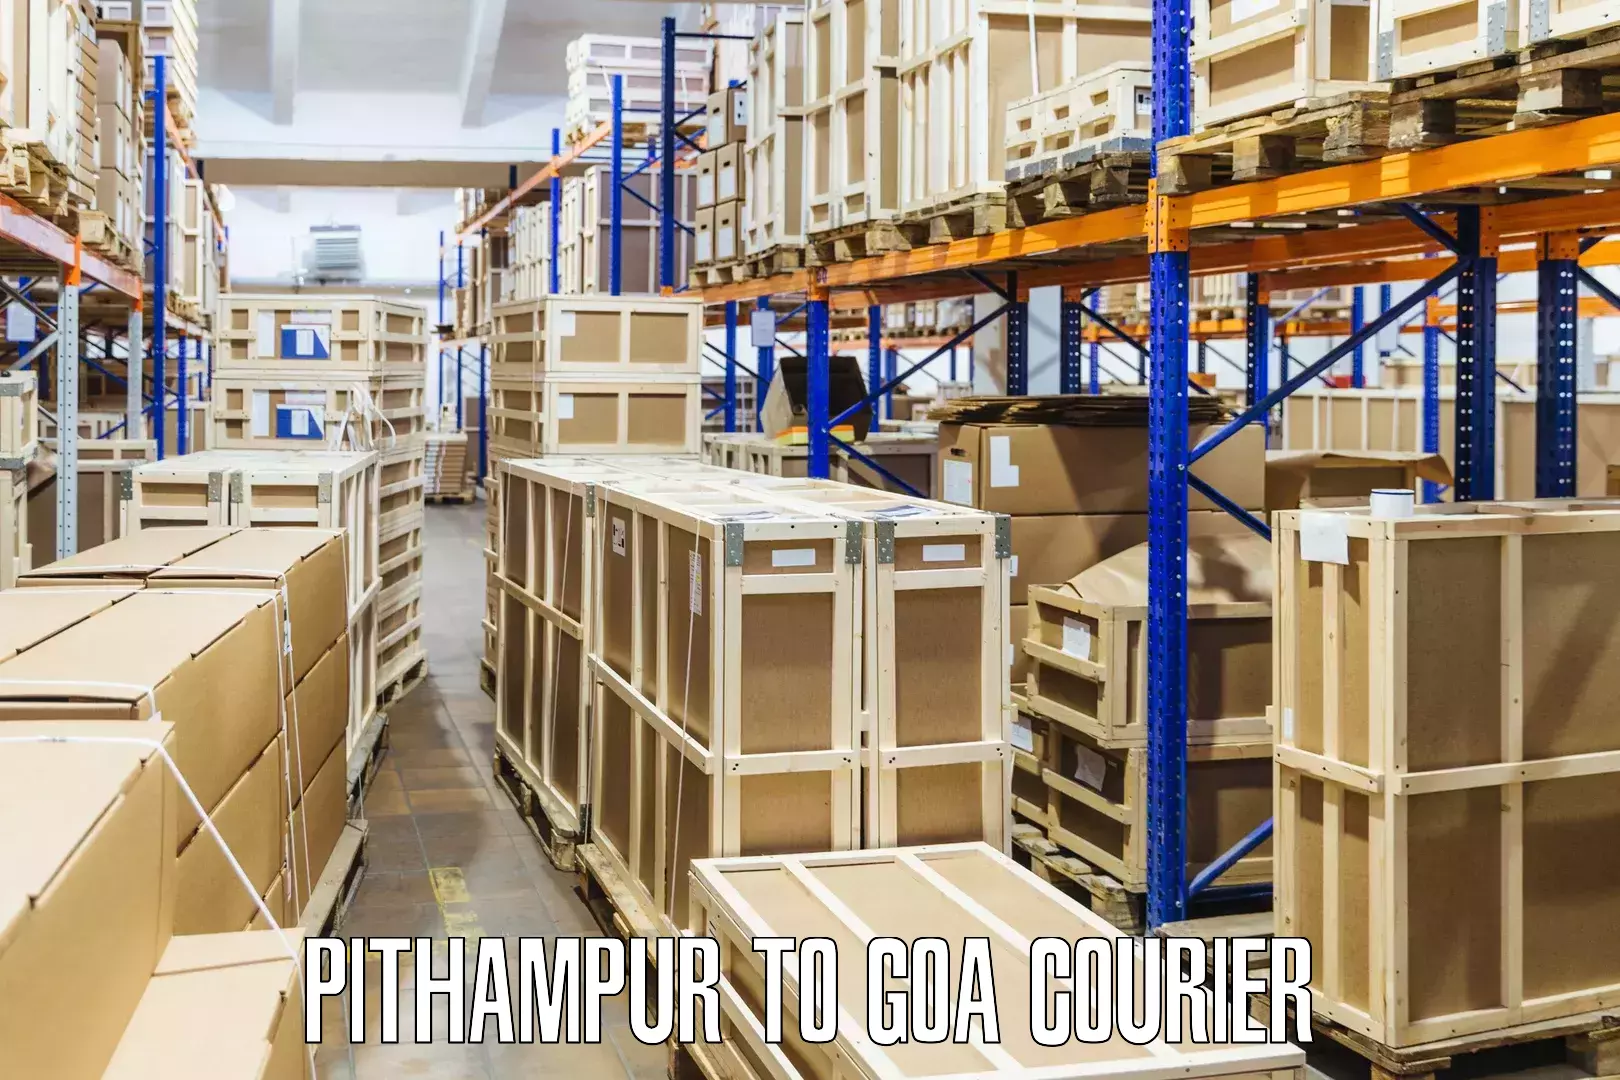 Regular parcel service Pithampur to Panaji